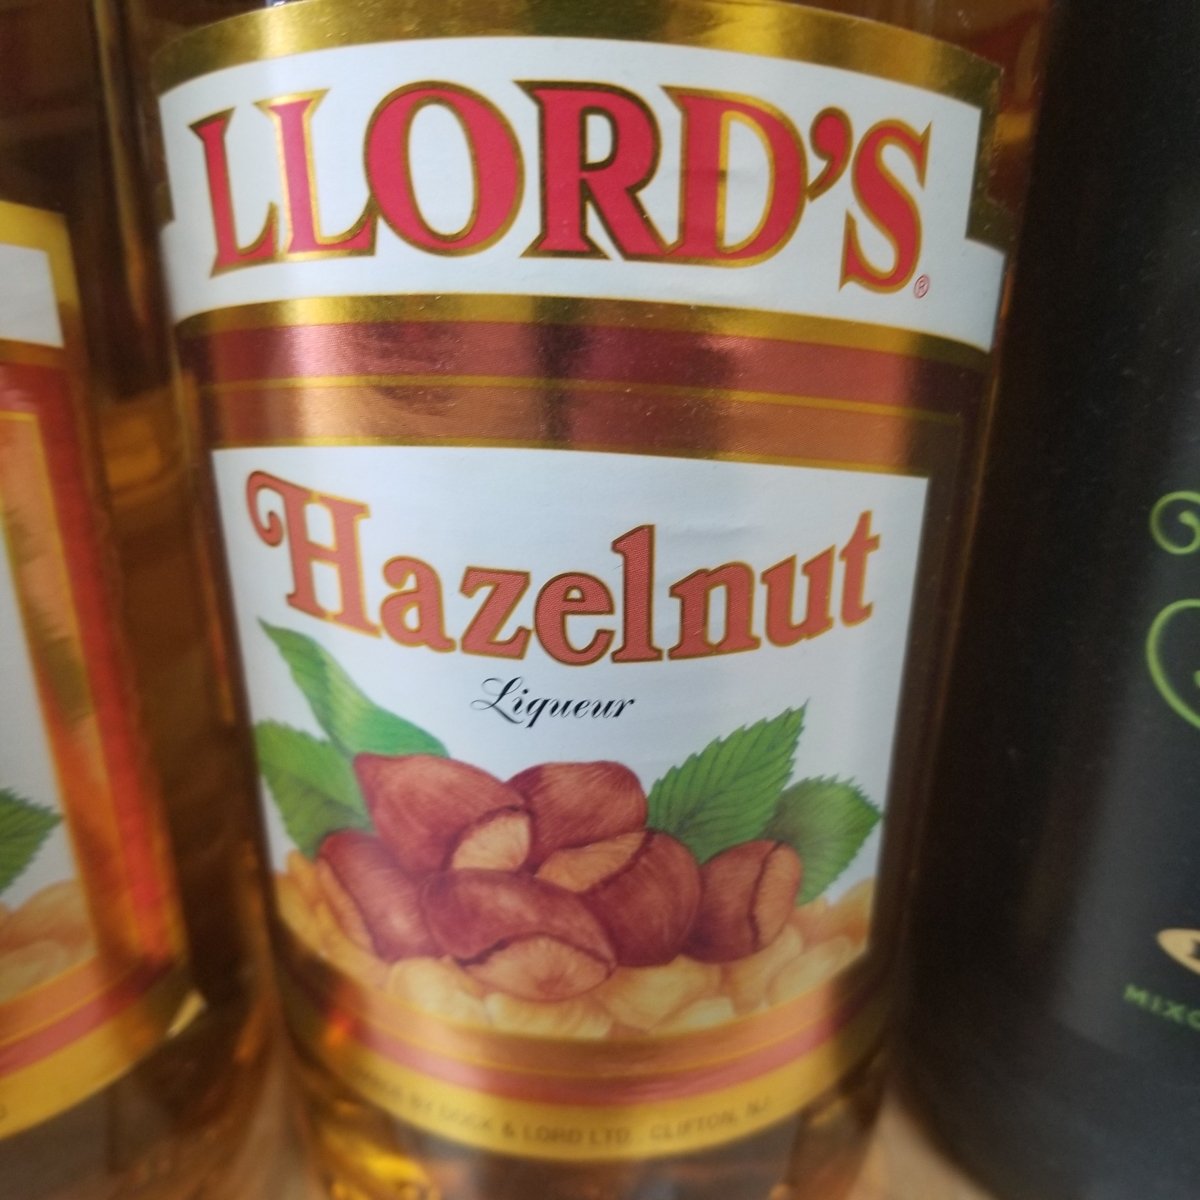 Llords Hazelnut - Sip & Say